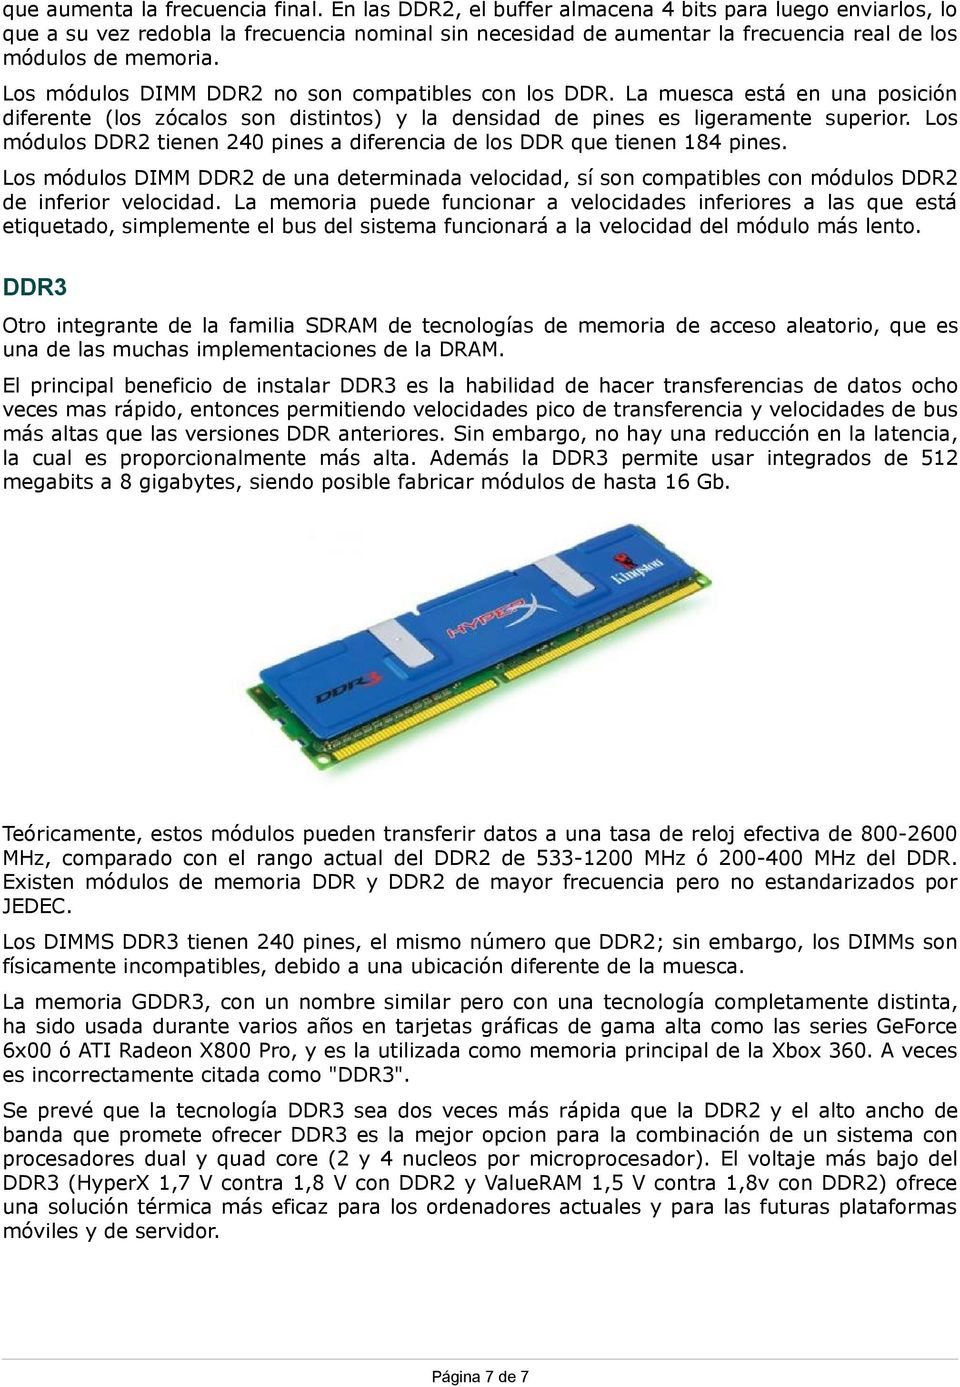 Los módulos DIMM DDR2 no son compatibles con los DDR. La muesca está en una posición diferente (los zócalos son distintos) y la densidad de pines es ligeramente superior.